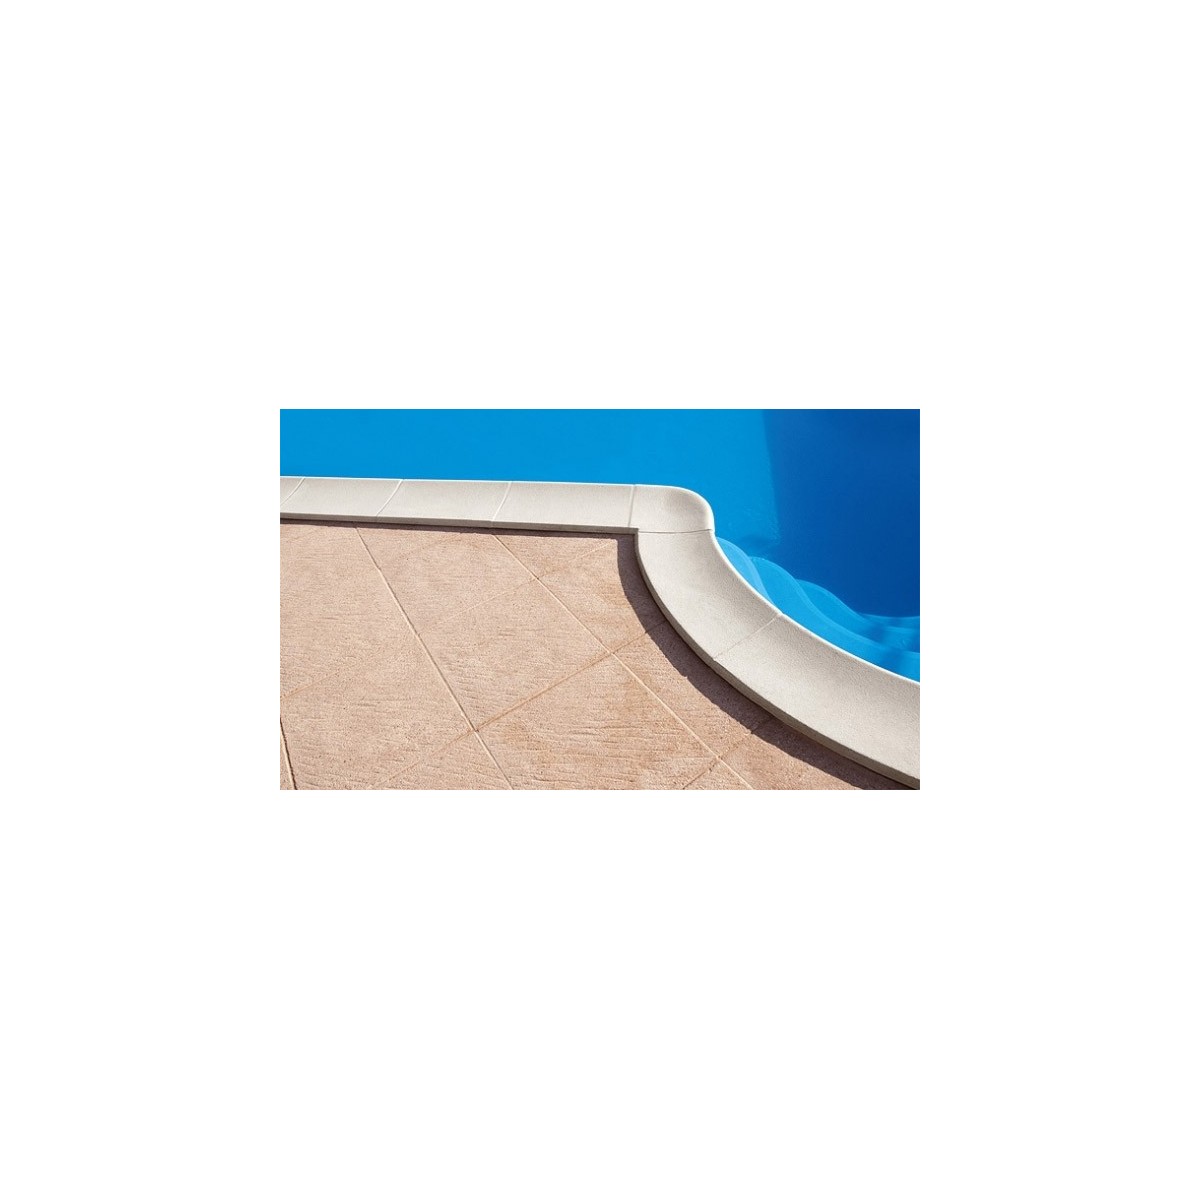 Bordo standard per piscina in pietra ricostruita 4x9 metri